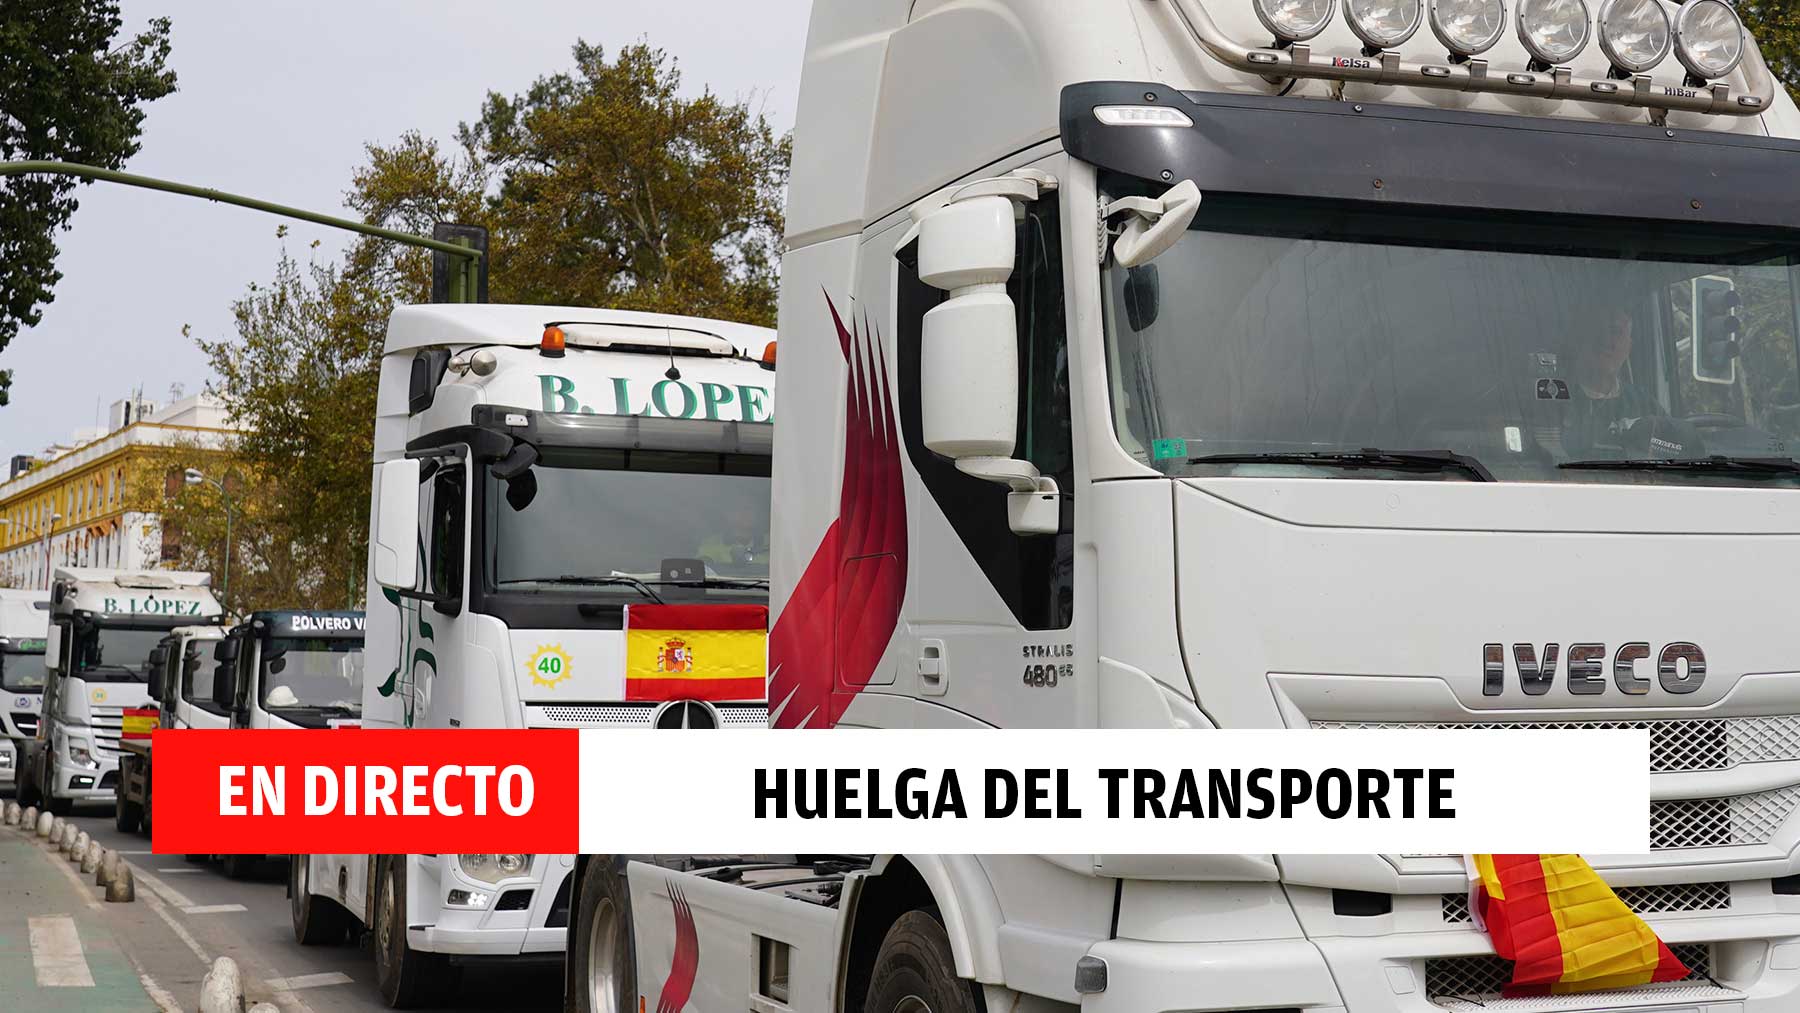 Última hora de la huelga de transporte en España, en directo: desabastecimiento y últimas noticias de los camioneros